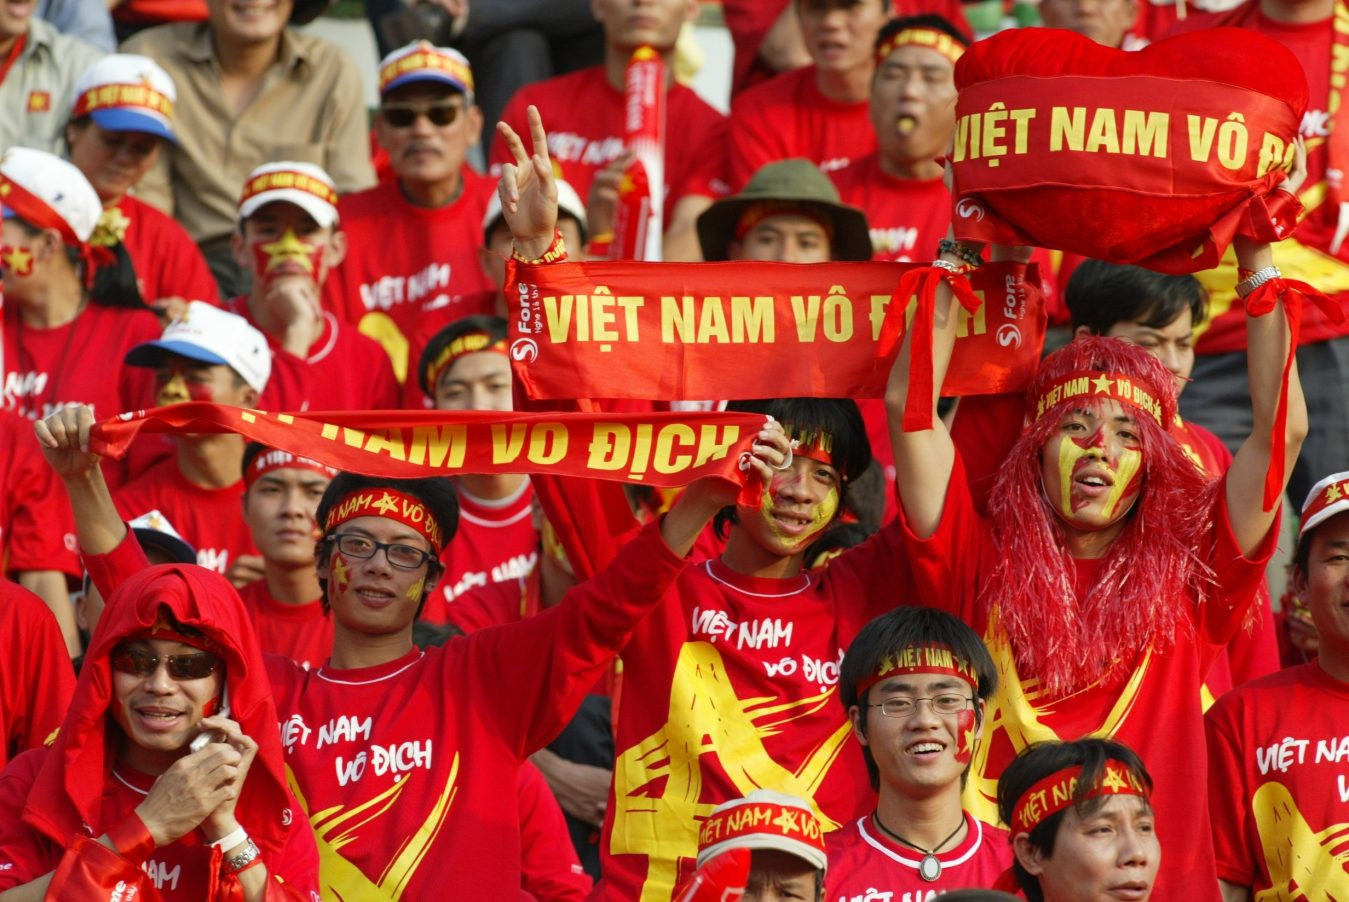 Băng rôn cổ vũ đội tuyển bóng đá Việt nam